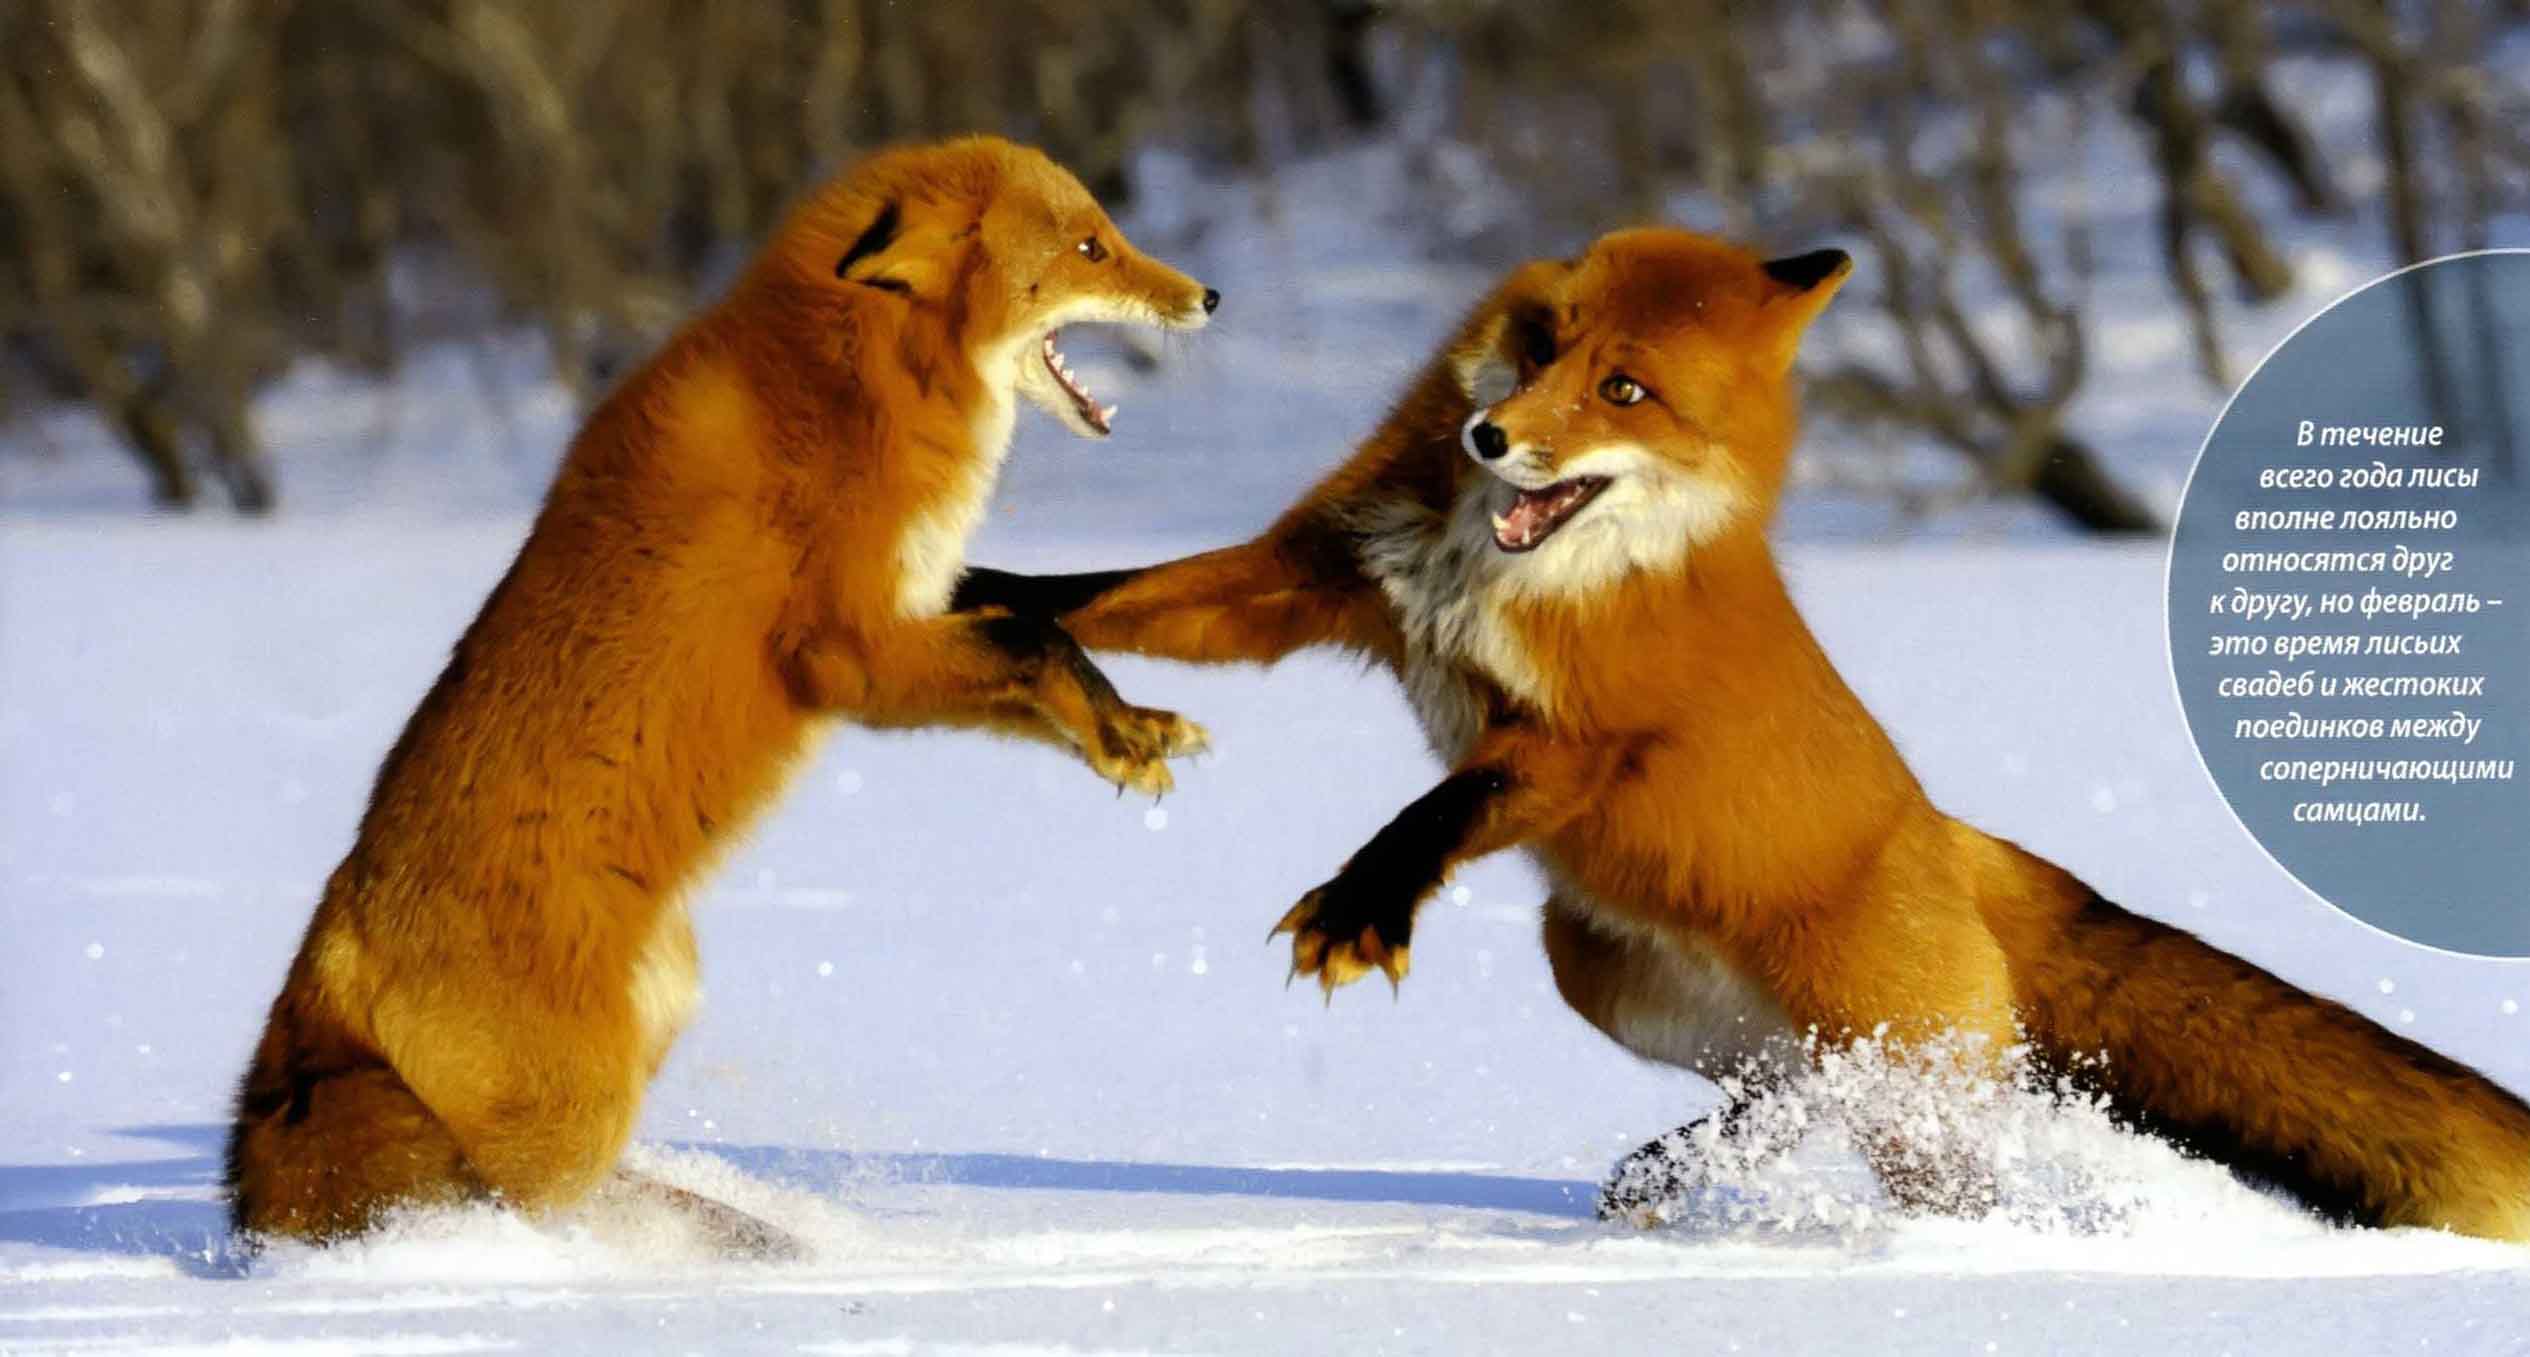 В течение всего года лисы вполне лояльно относятся друг к другу, но февраль - это время лисьих свадеб и жестоких поединков между соперничающими самцами.